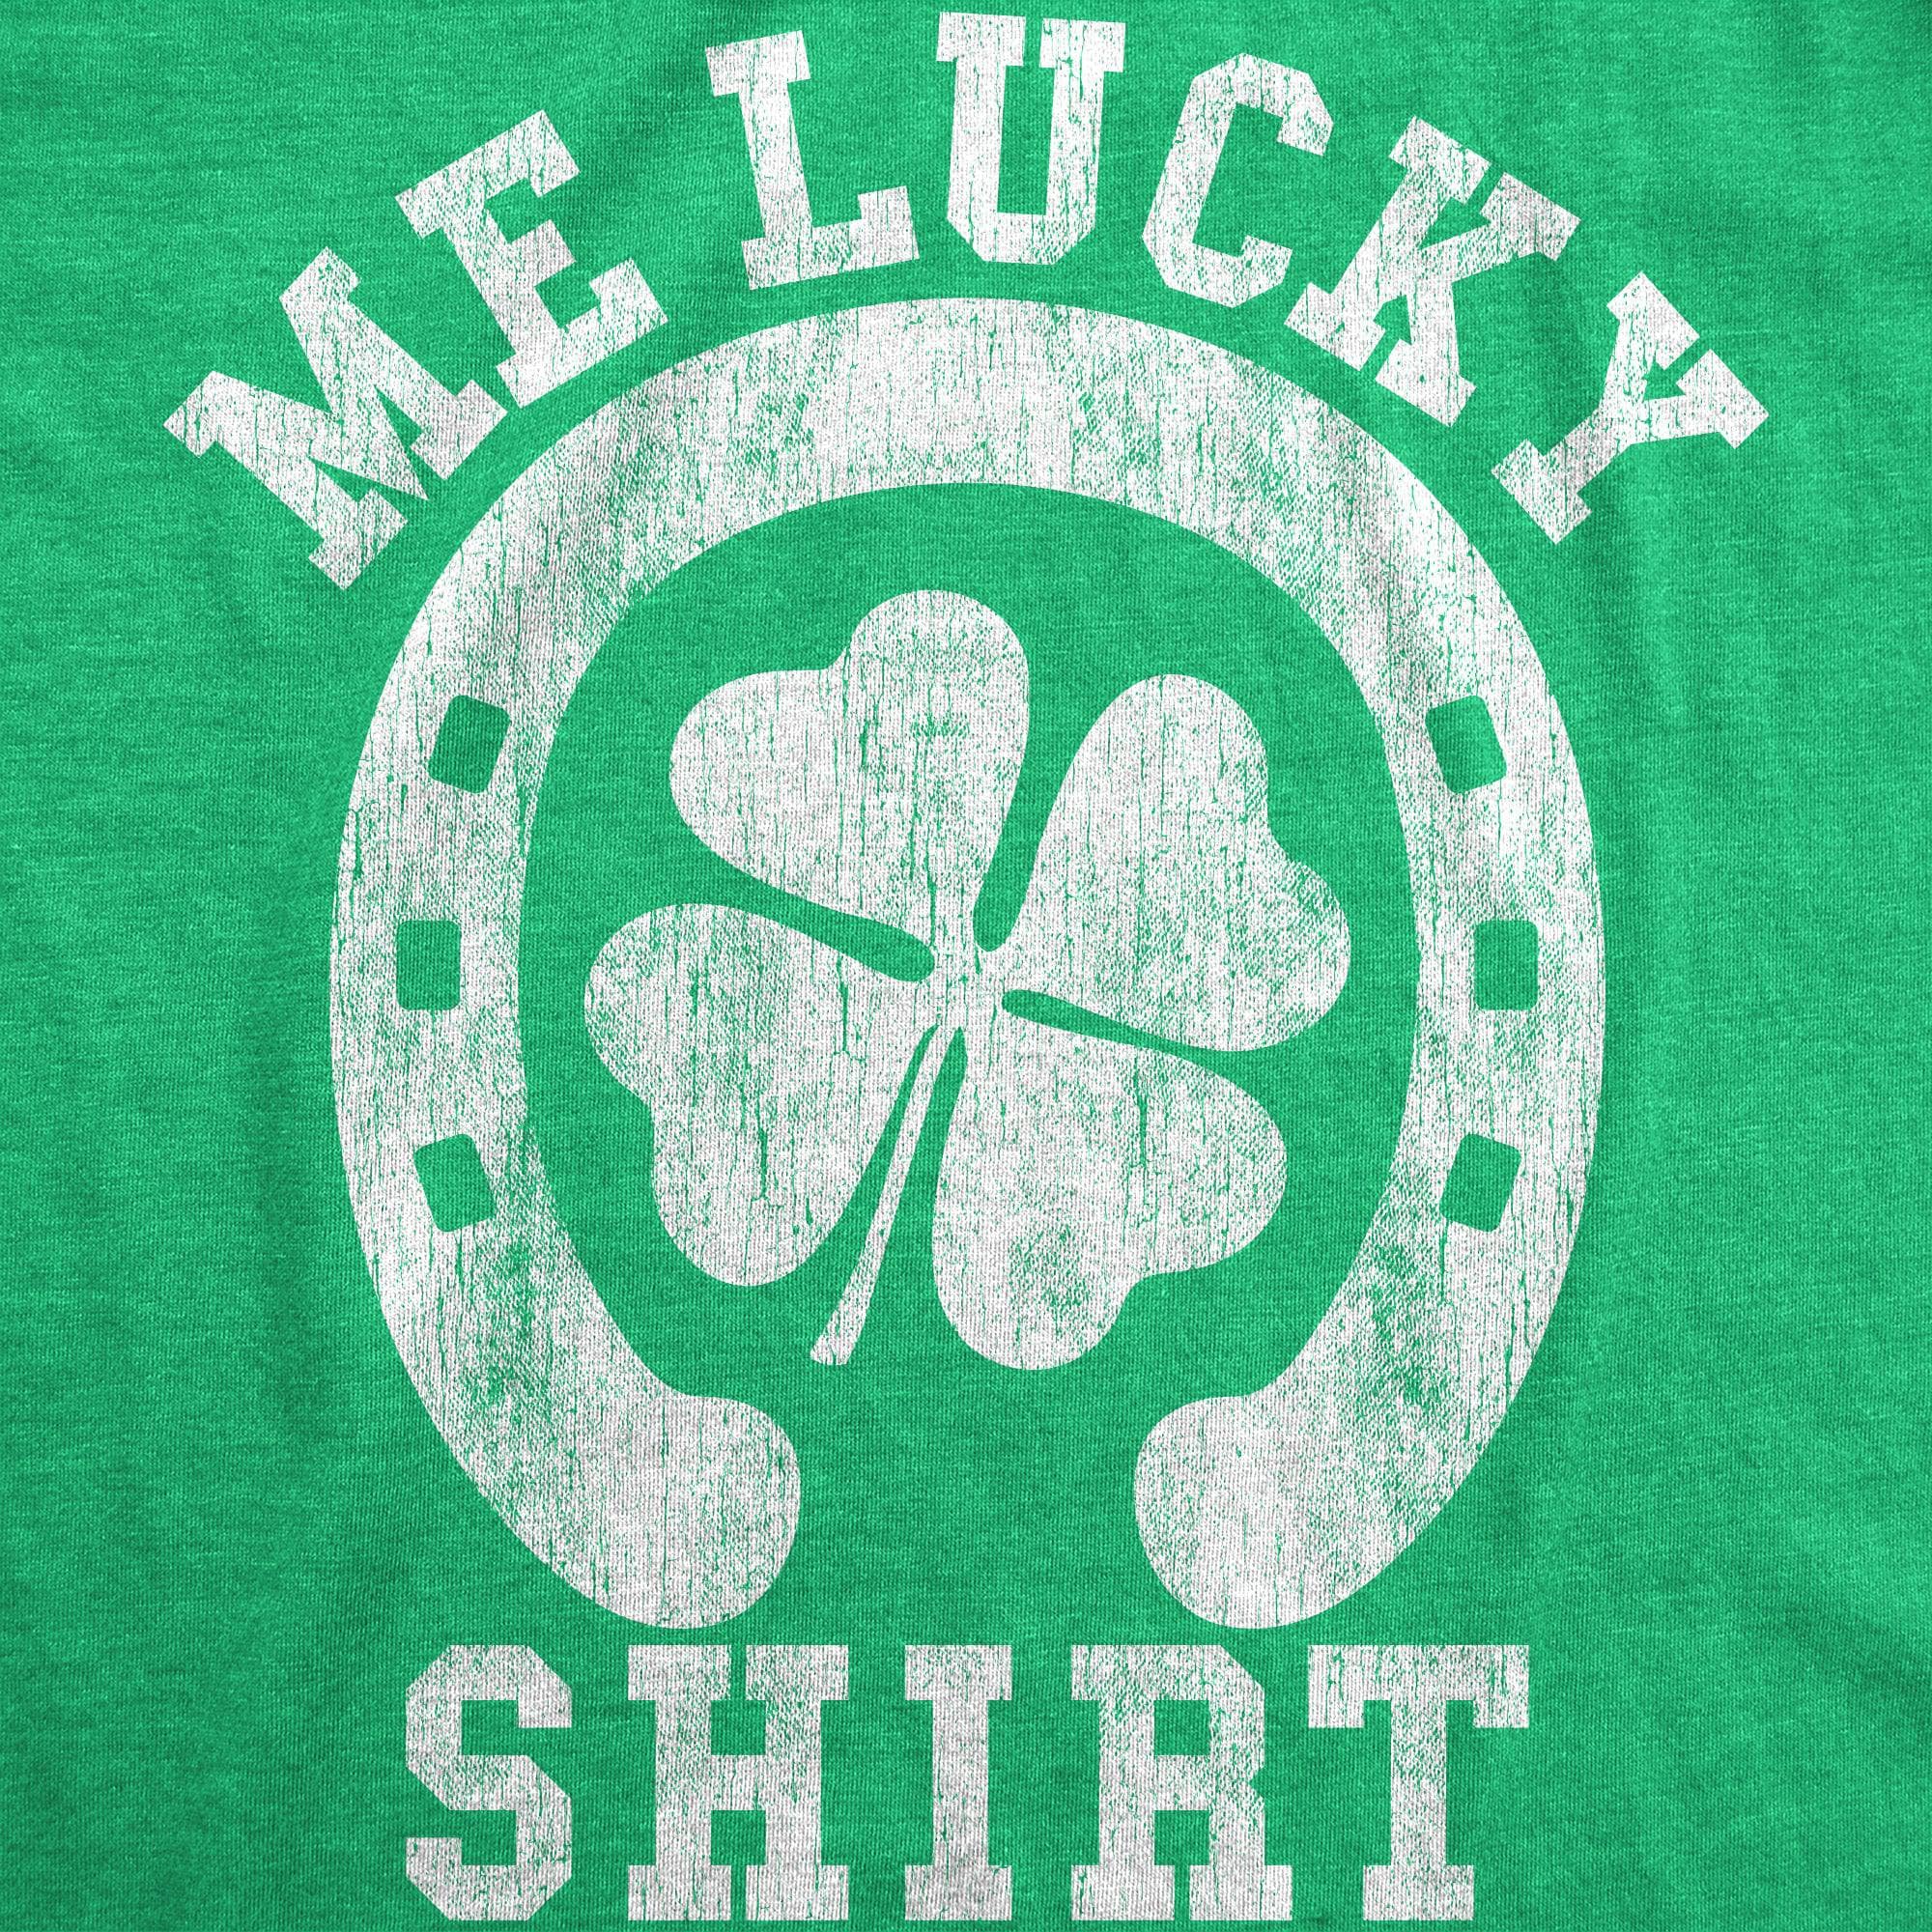 Me Lucky Shirt Men's Tshirt  -  Crazy Dog T-Shirts